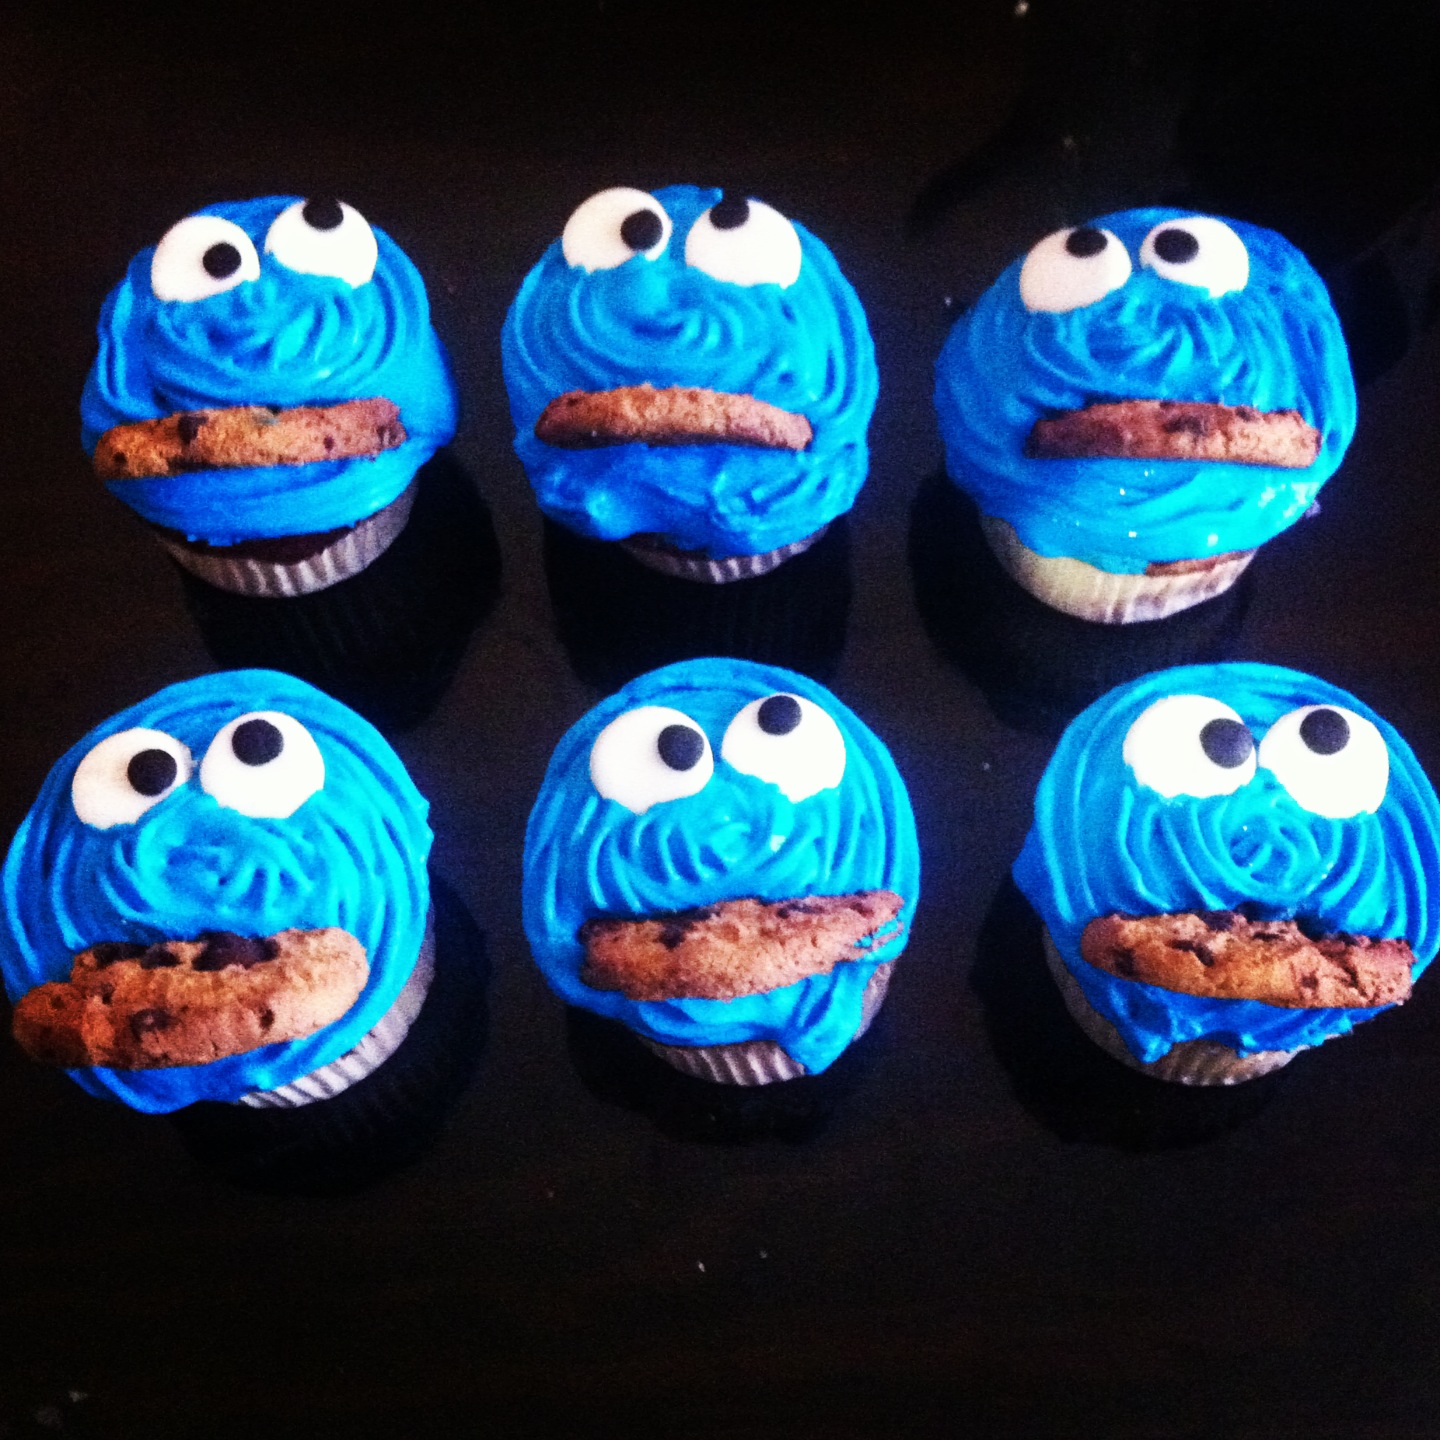 Cupcakes del Monstruo de las Galletas - PequeRecetas